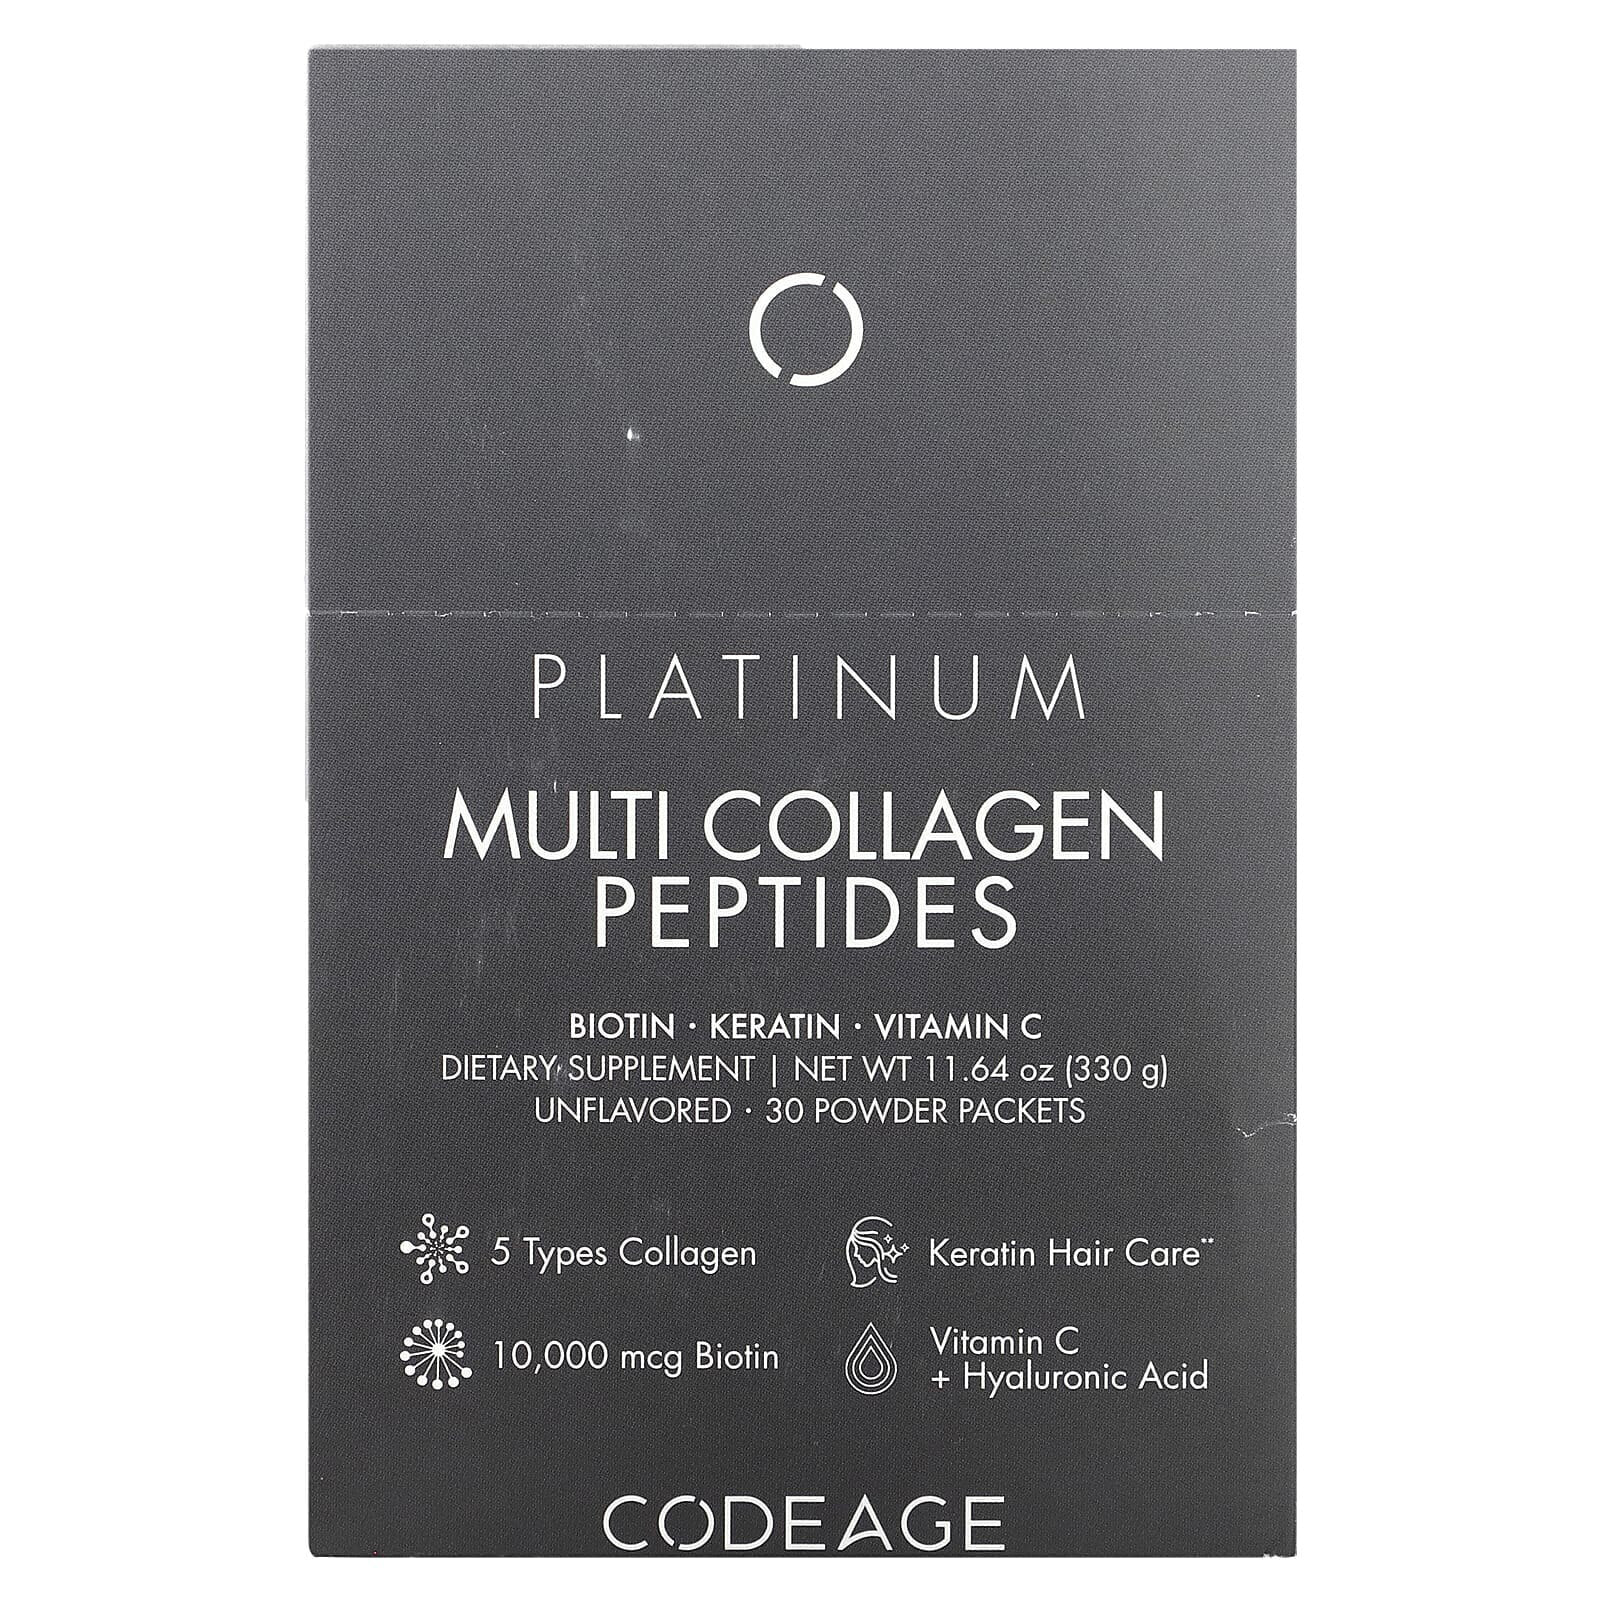 Codeage, Platinum Multi Collagen Peptides, без добавок, 30 пакетиков по 11 г (0,38 унции)